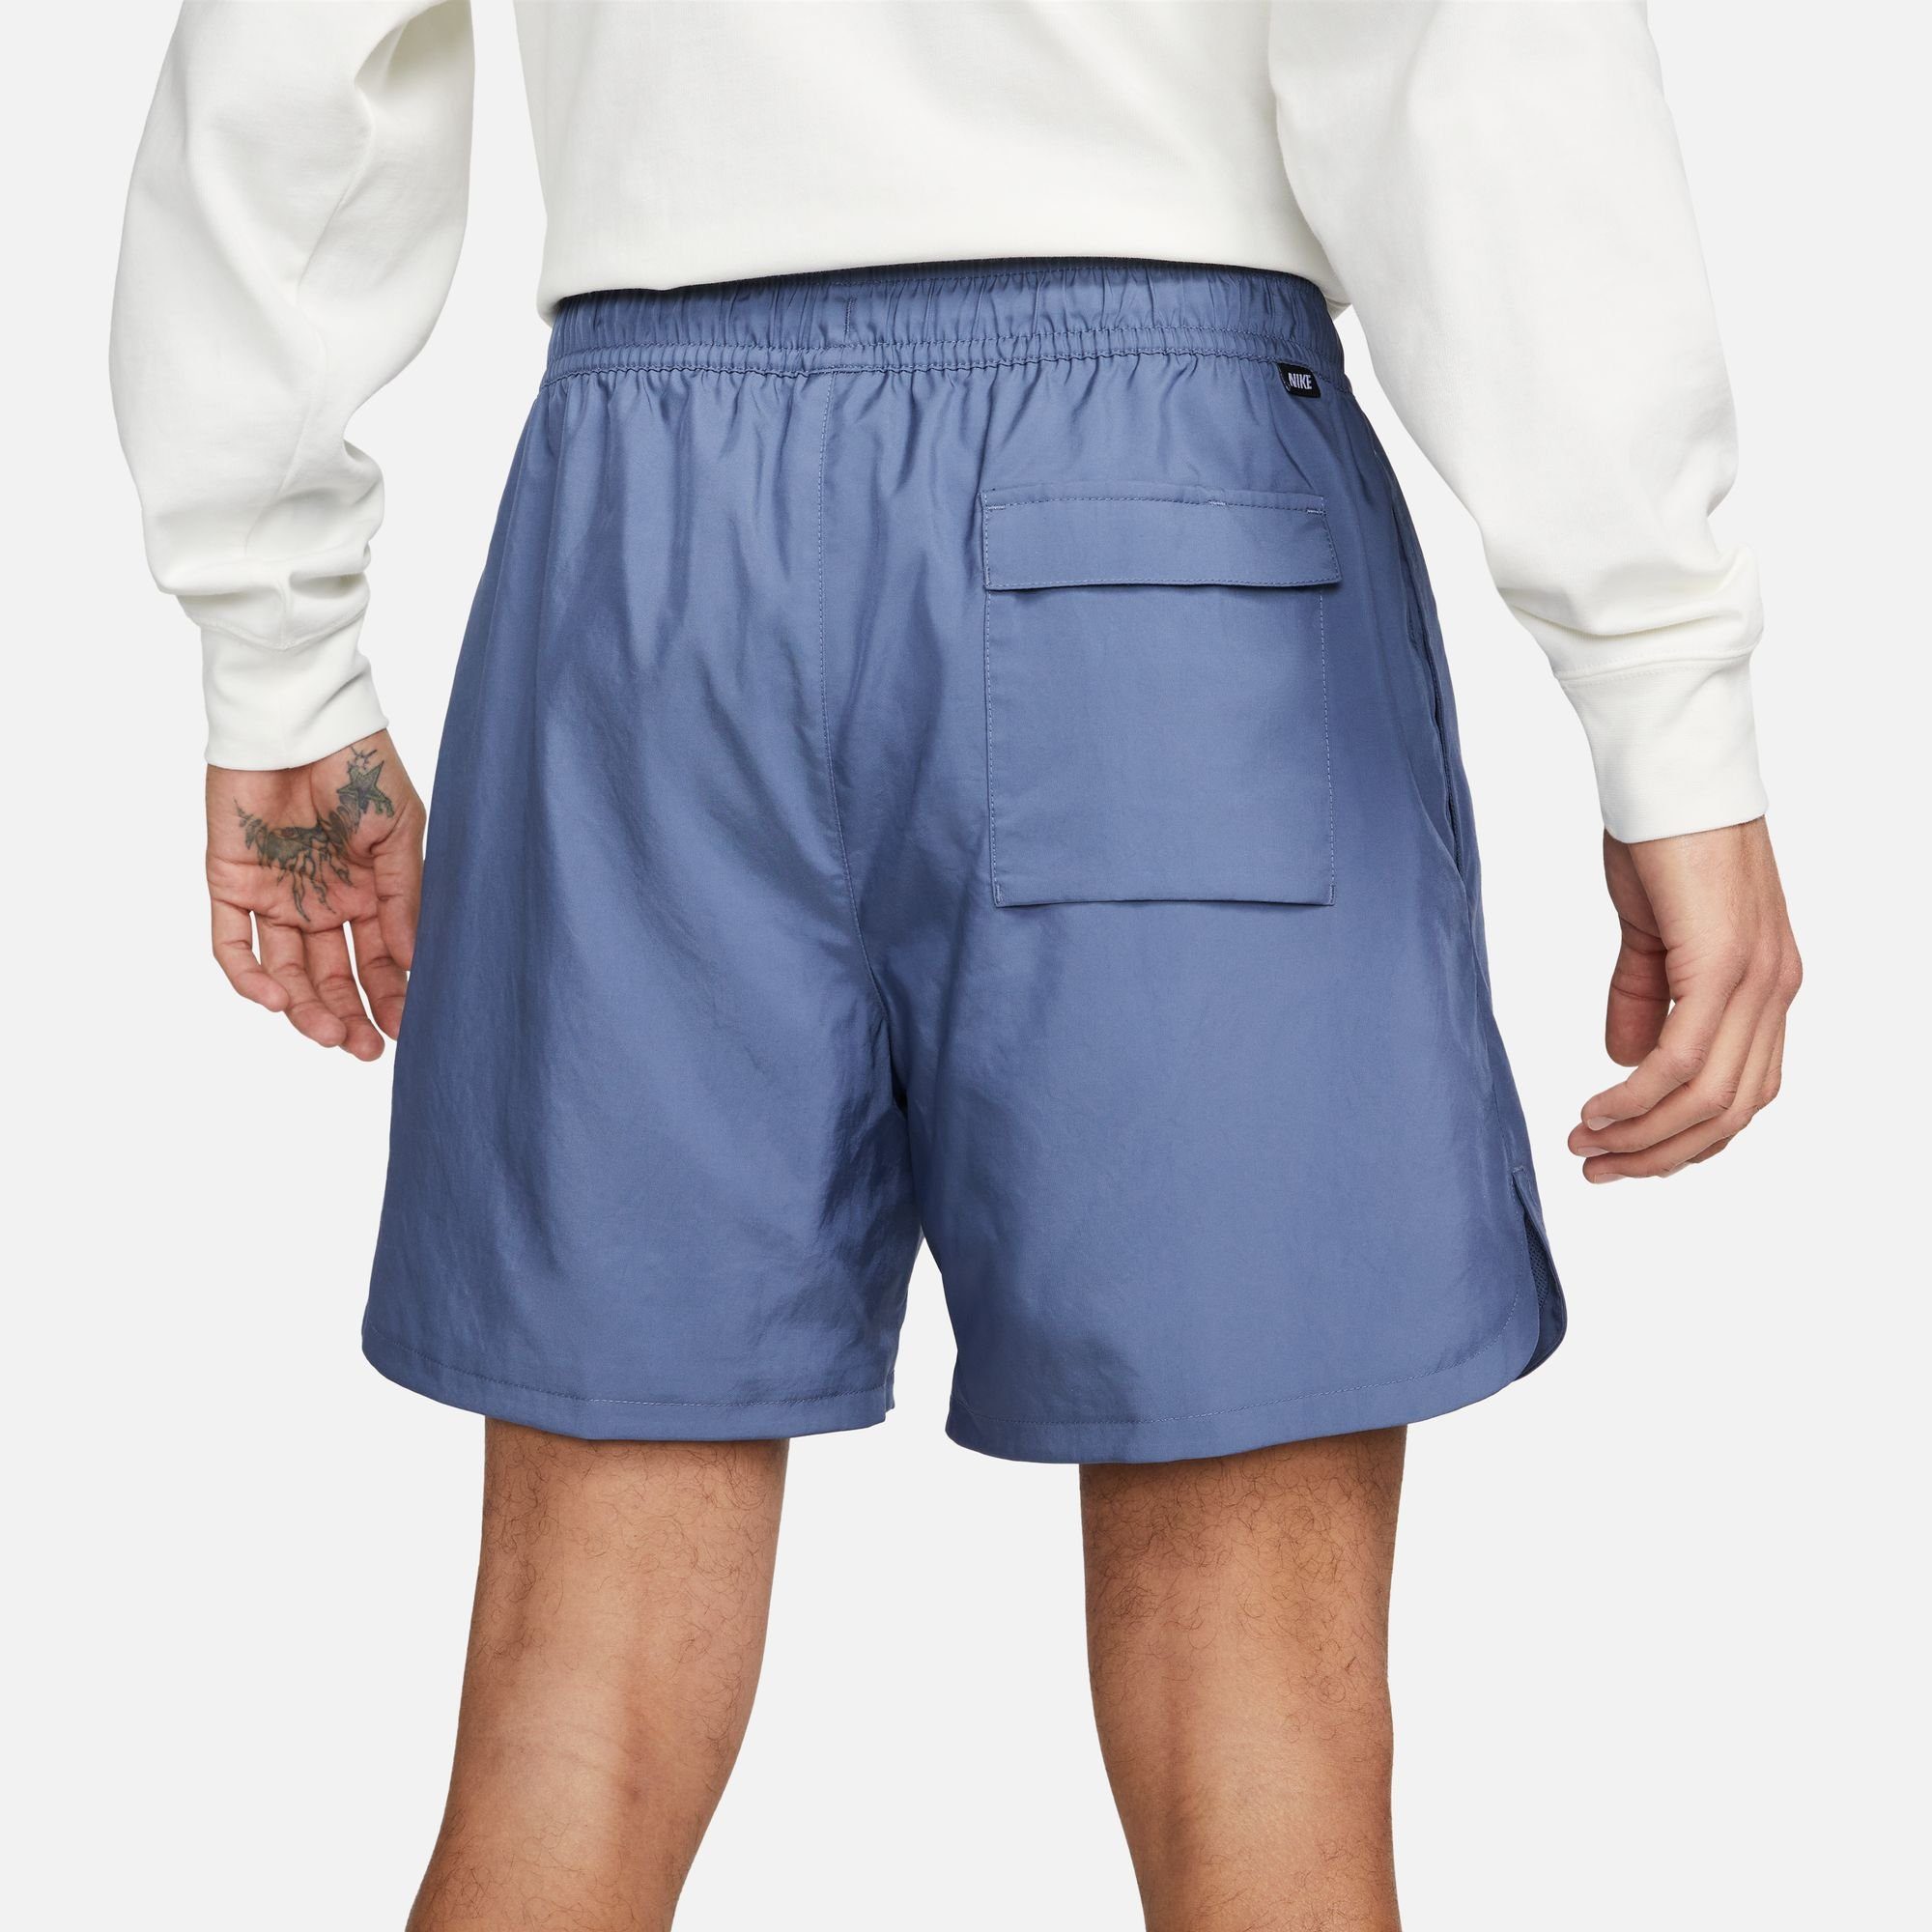 Sportswear Flow Essentials Shorts Woven Nike Lined blau Sport Men's Shorts